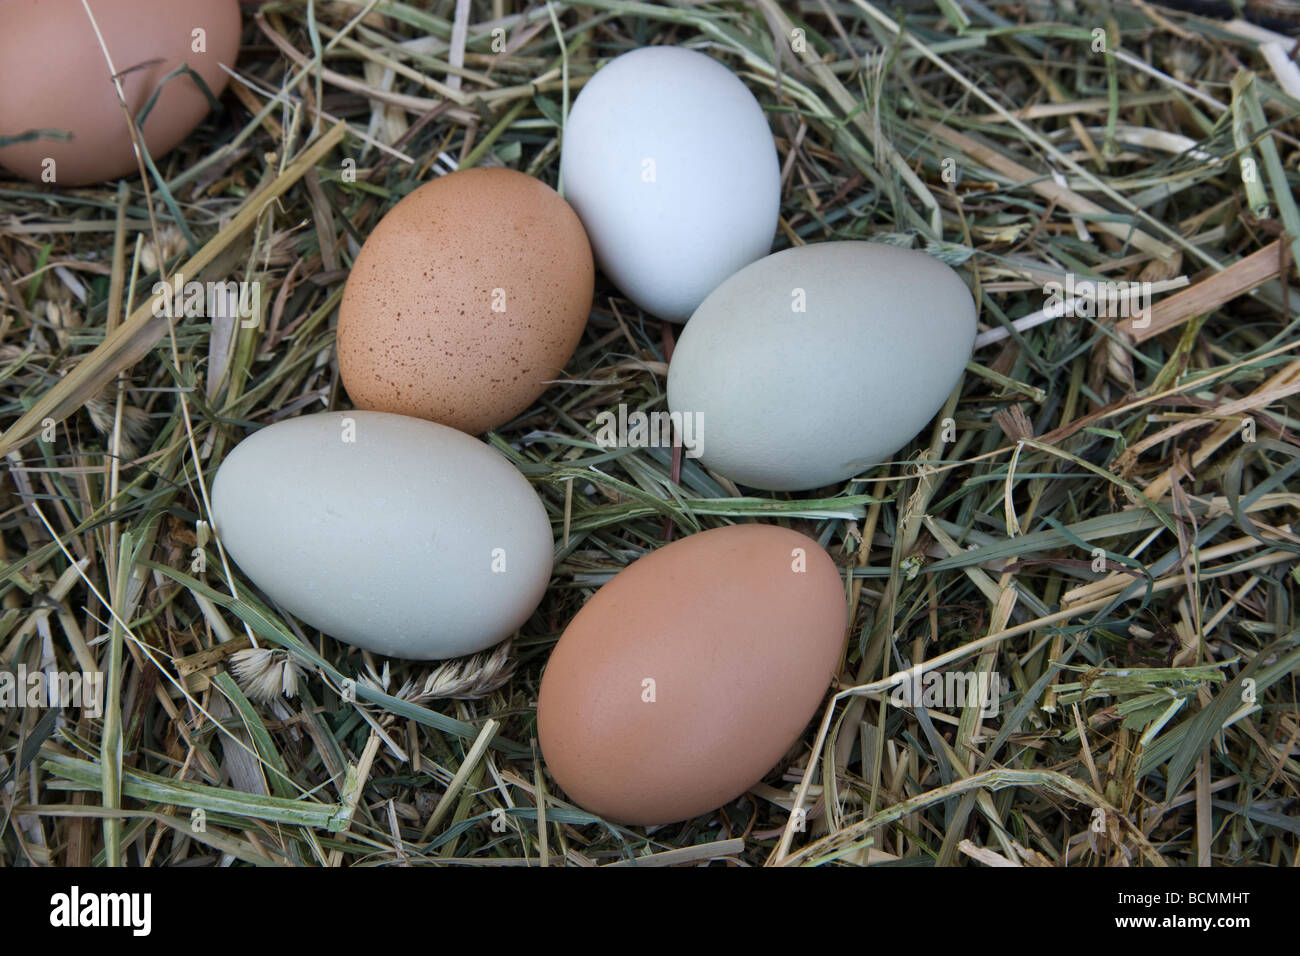 Los huevos de gallina recién sembradas, colores naturales poniendo en el heno Foto de stock